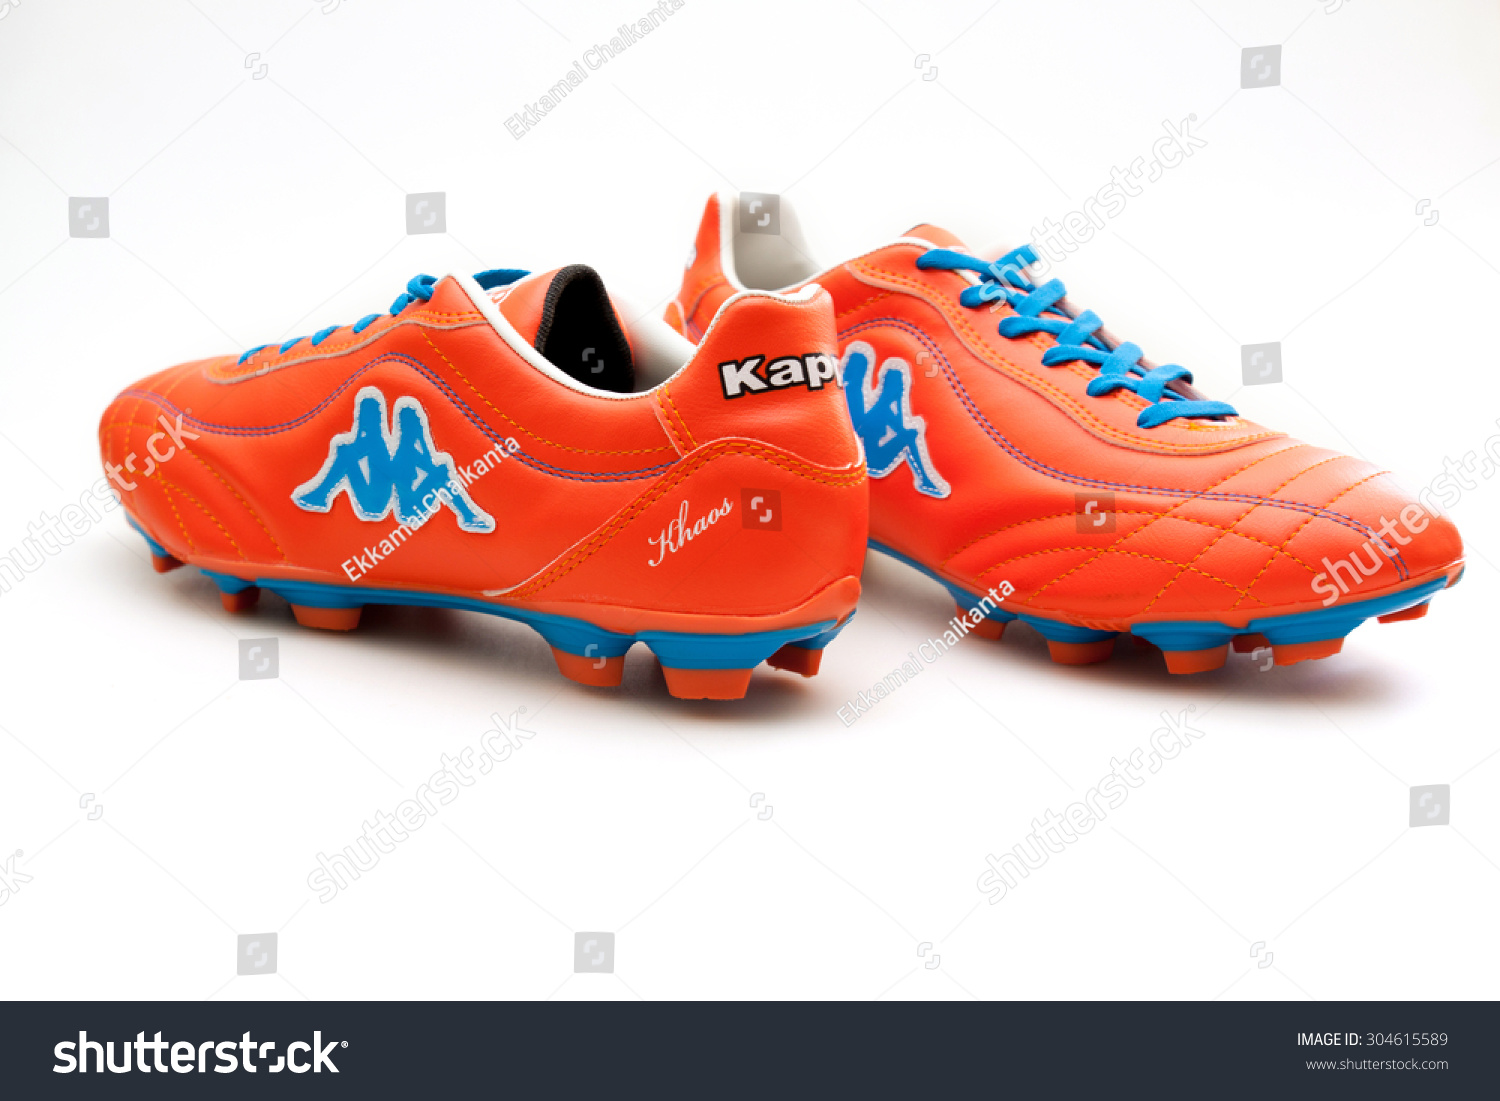 kappa football shoes